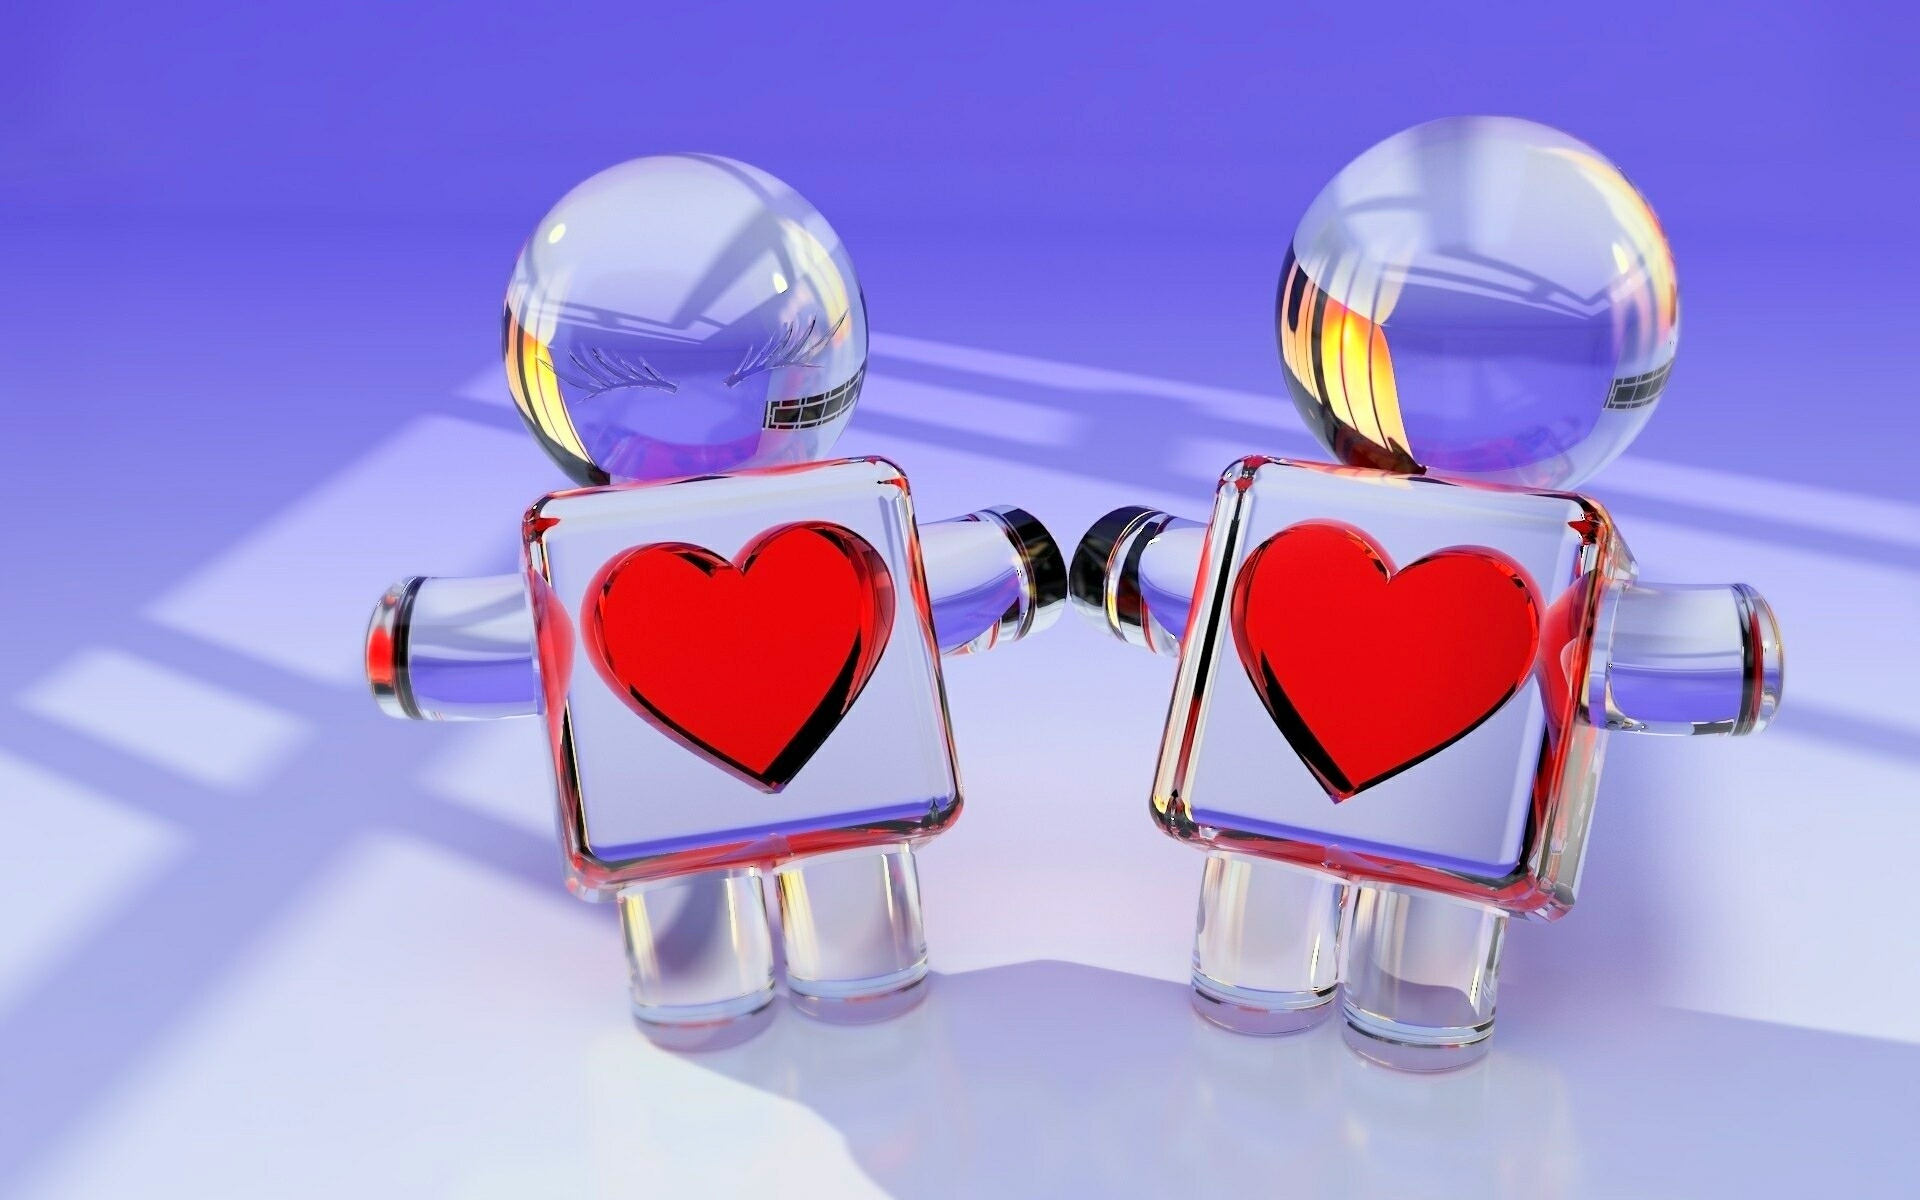 Image: 3D, little men, glass, hearts, couple, shadow